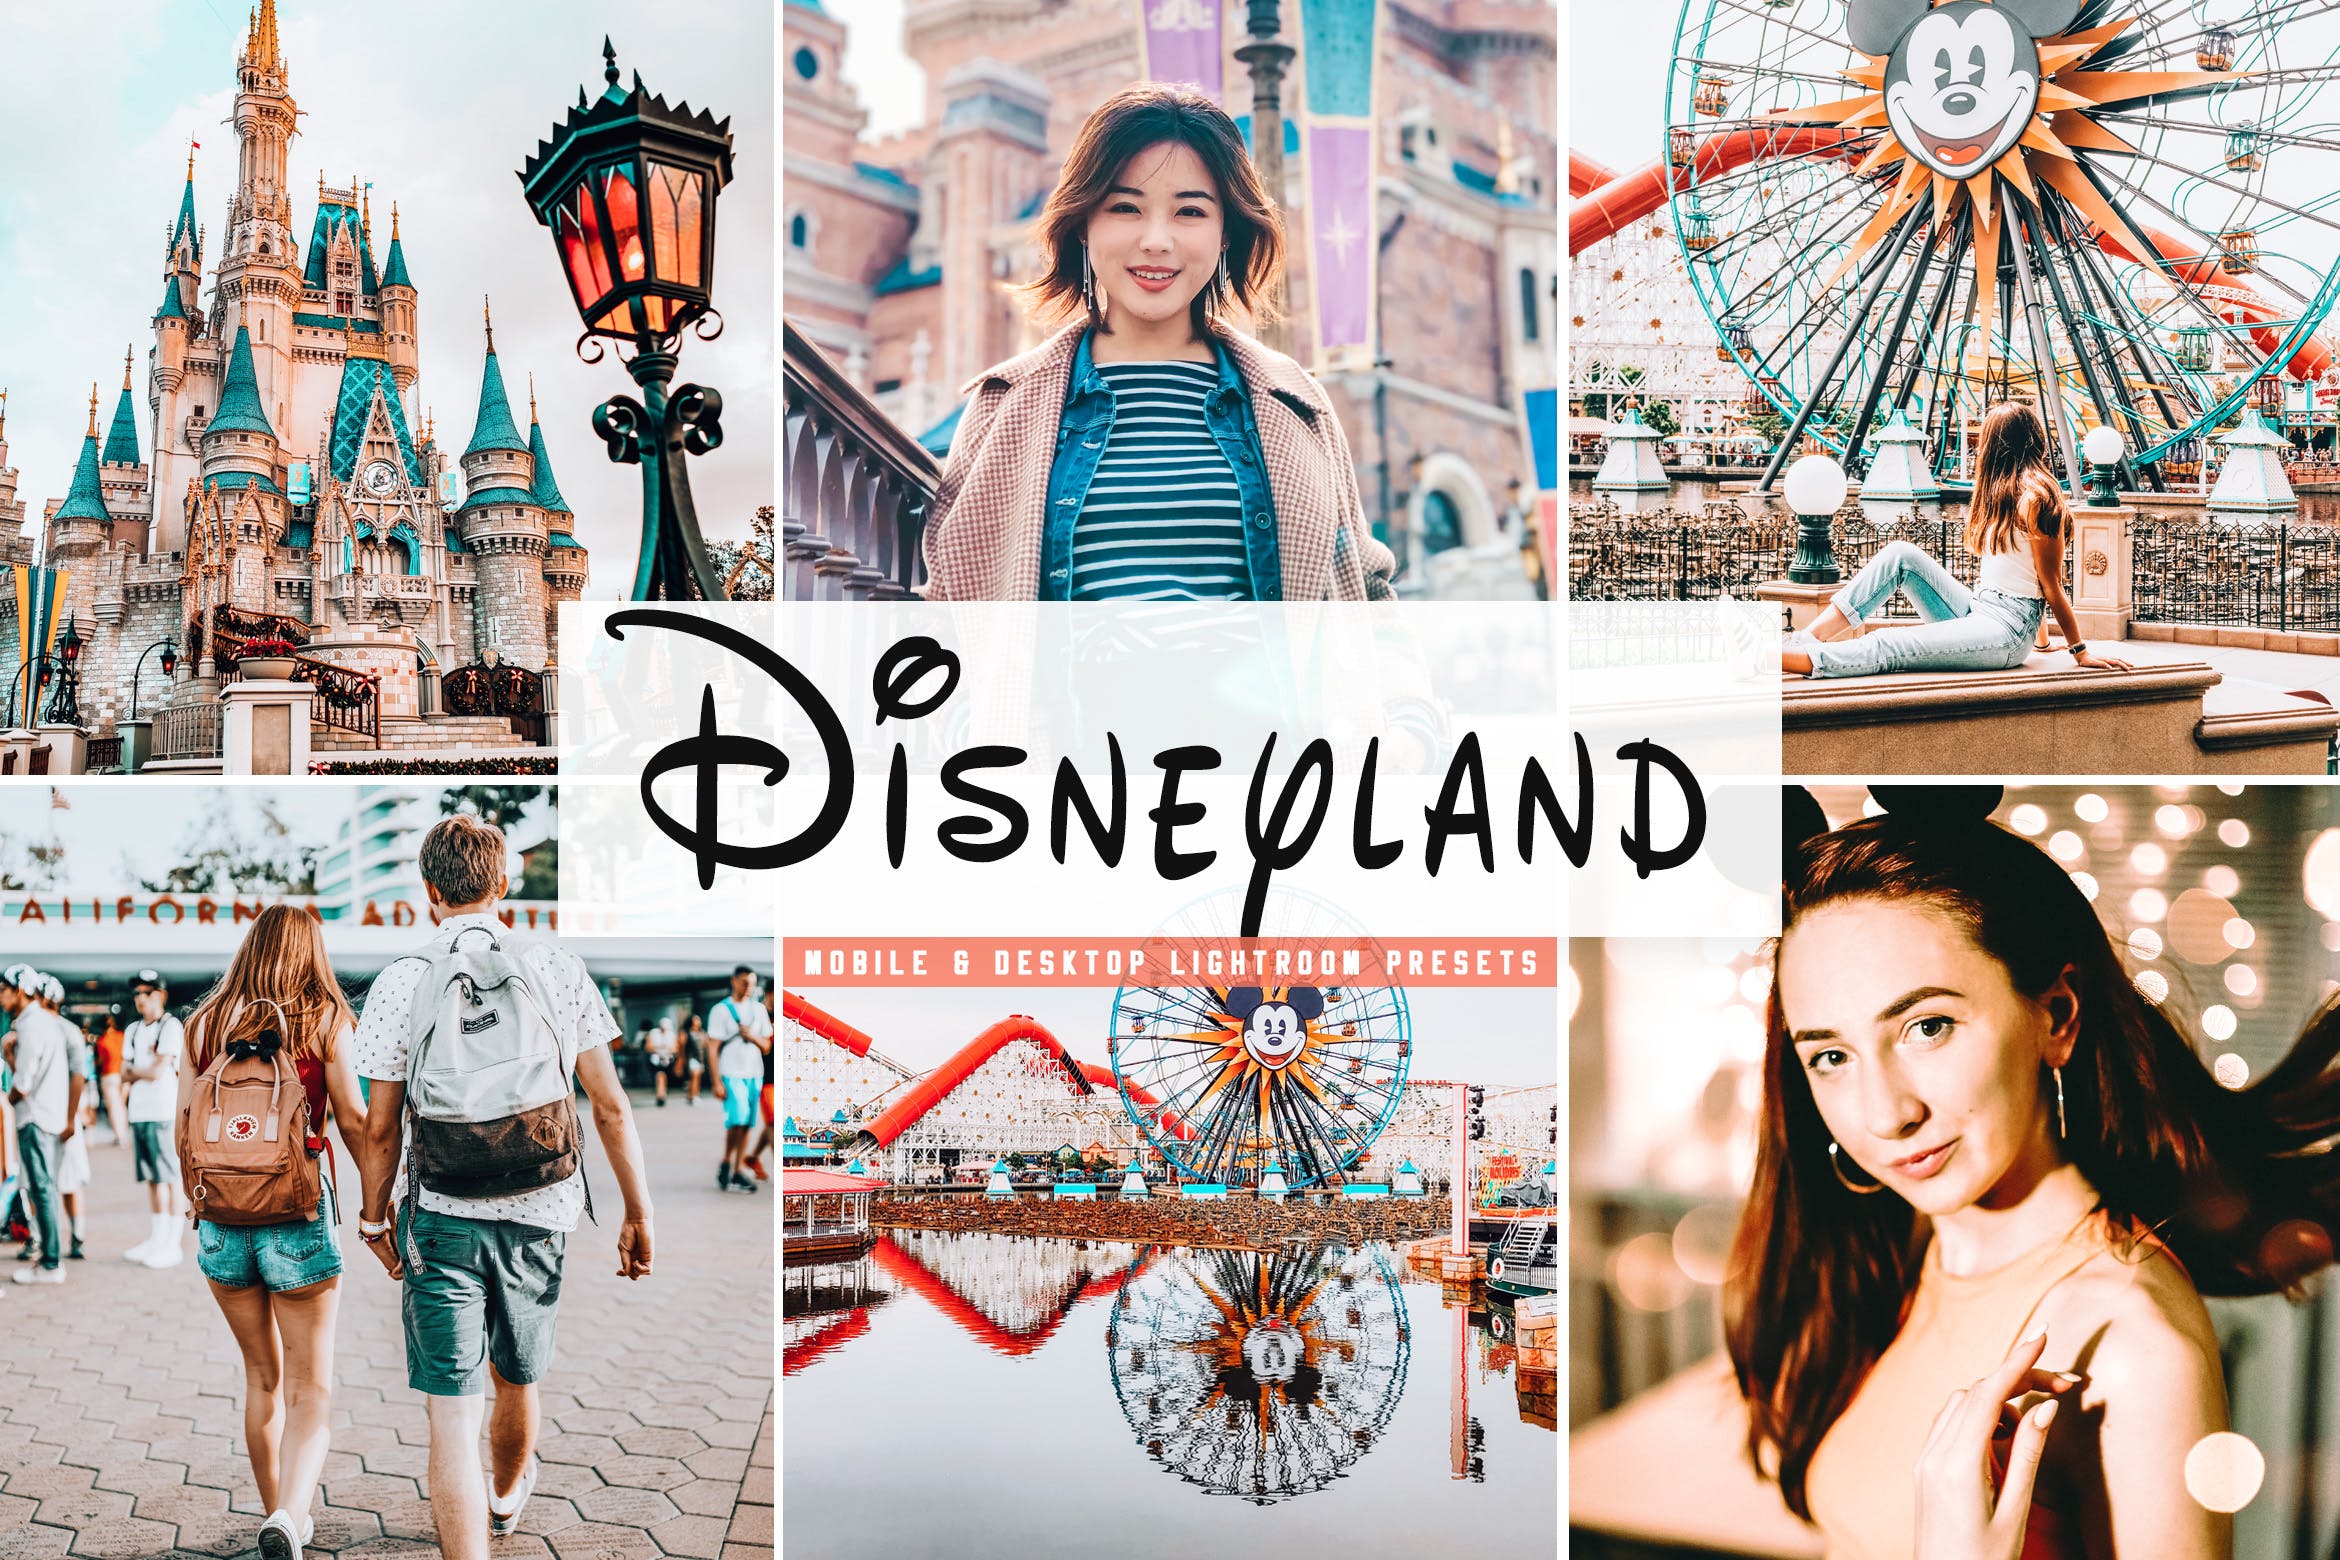 迪士尼乐园游玩摄影必备LR调色滤镜合集 Disneyland Mobile & Desktop Lightroom Presets插图